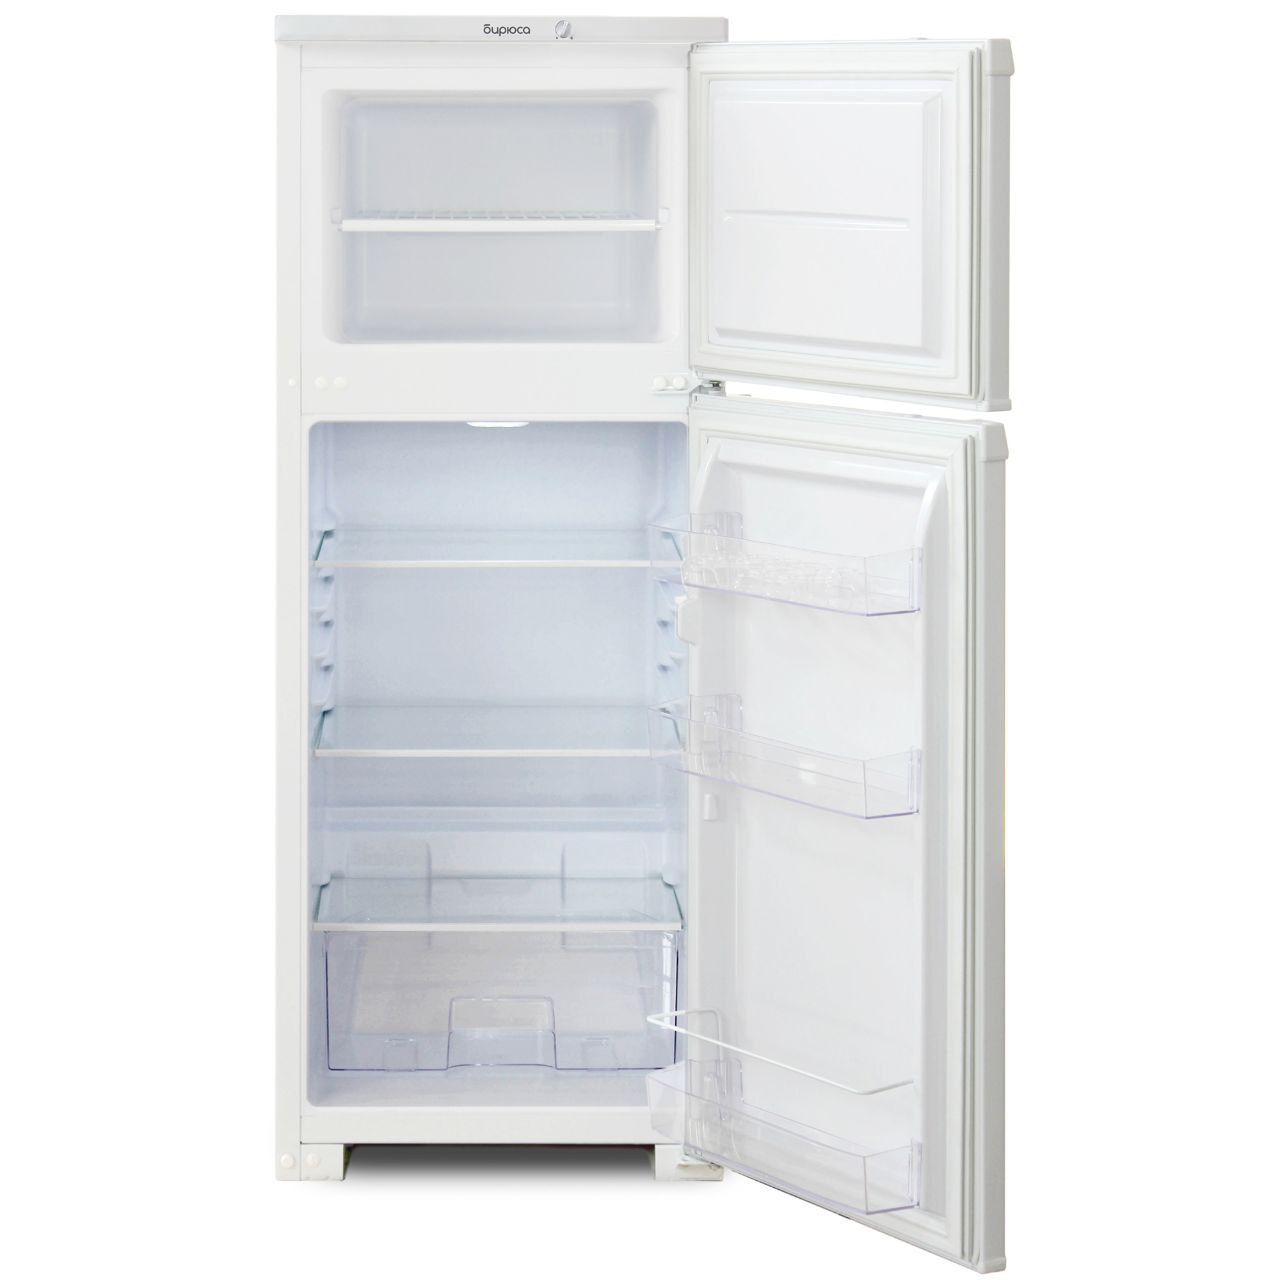 Бирюса 122 холодильник xolodilnik